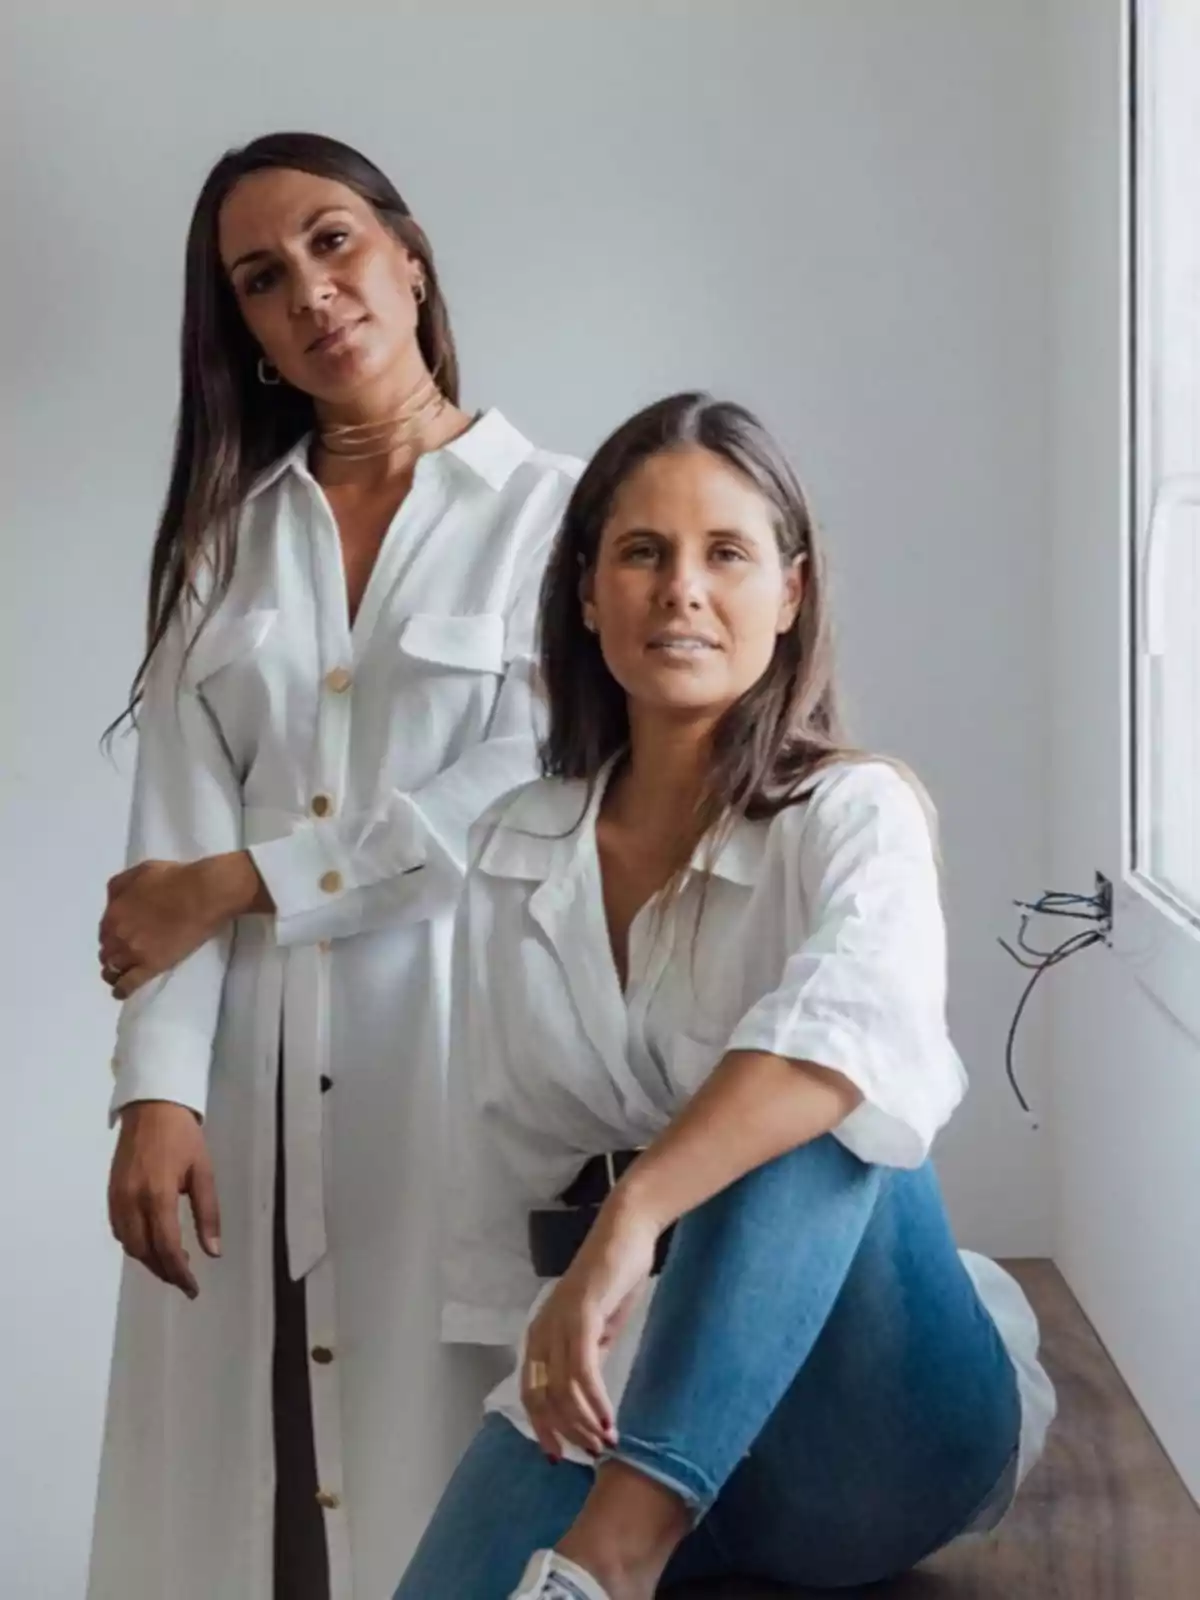 Dos mujeres posando juntas, una de pie y la otra sentada, ambas vestidas con camisas blancas y jeans, en un entorno interior con una pared blanca de fondo.